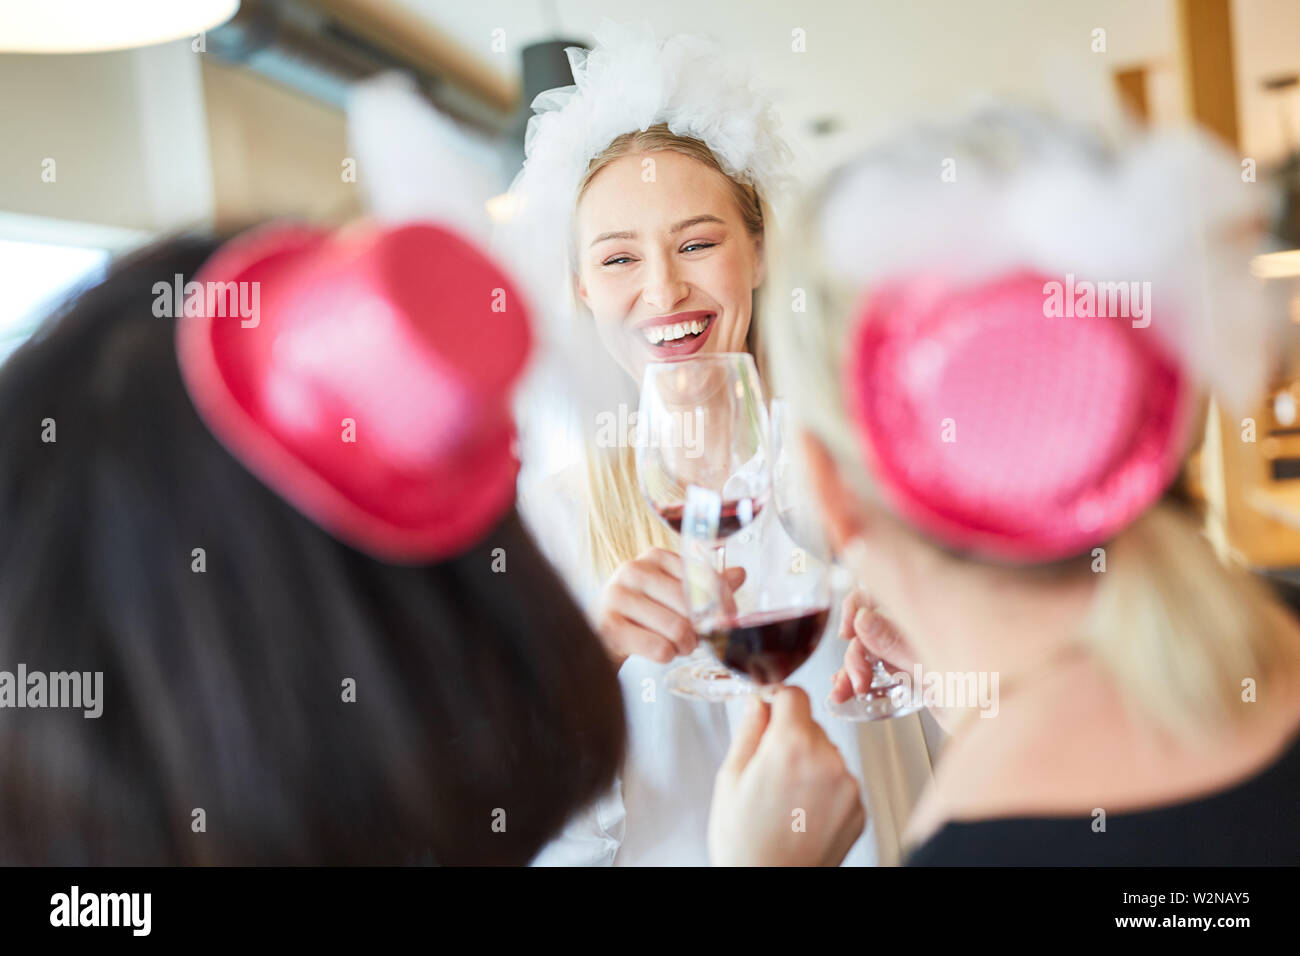 Festif, jeune femme en robe nuptiale tandis que le grillage avec du vin lors d'une fête Banque D'Images